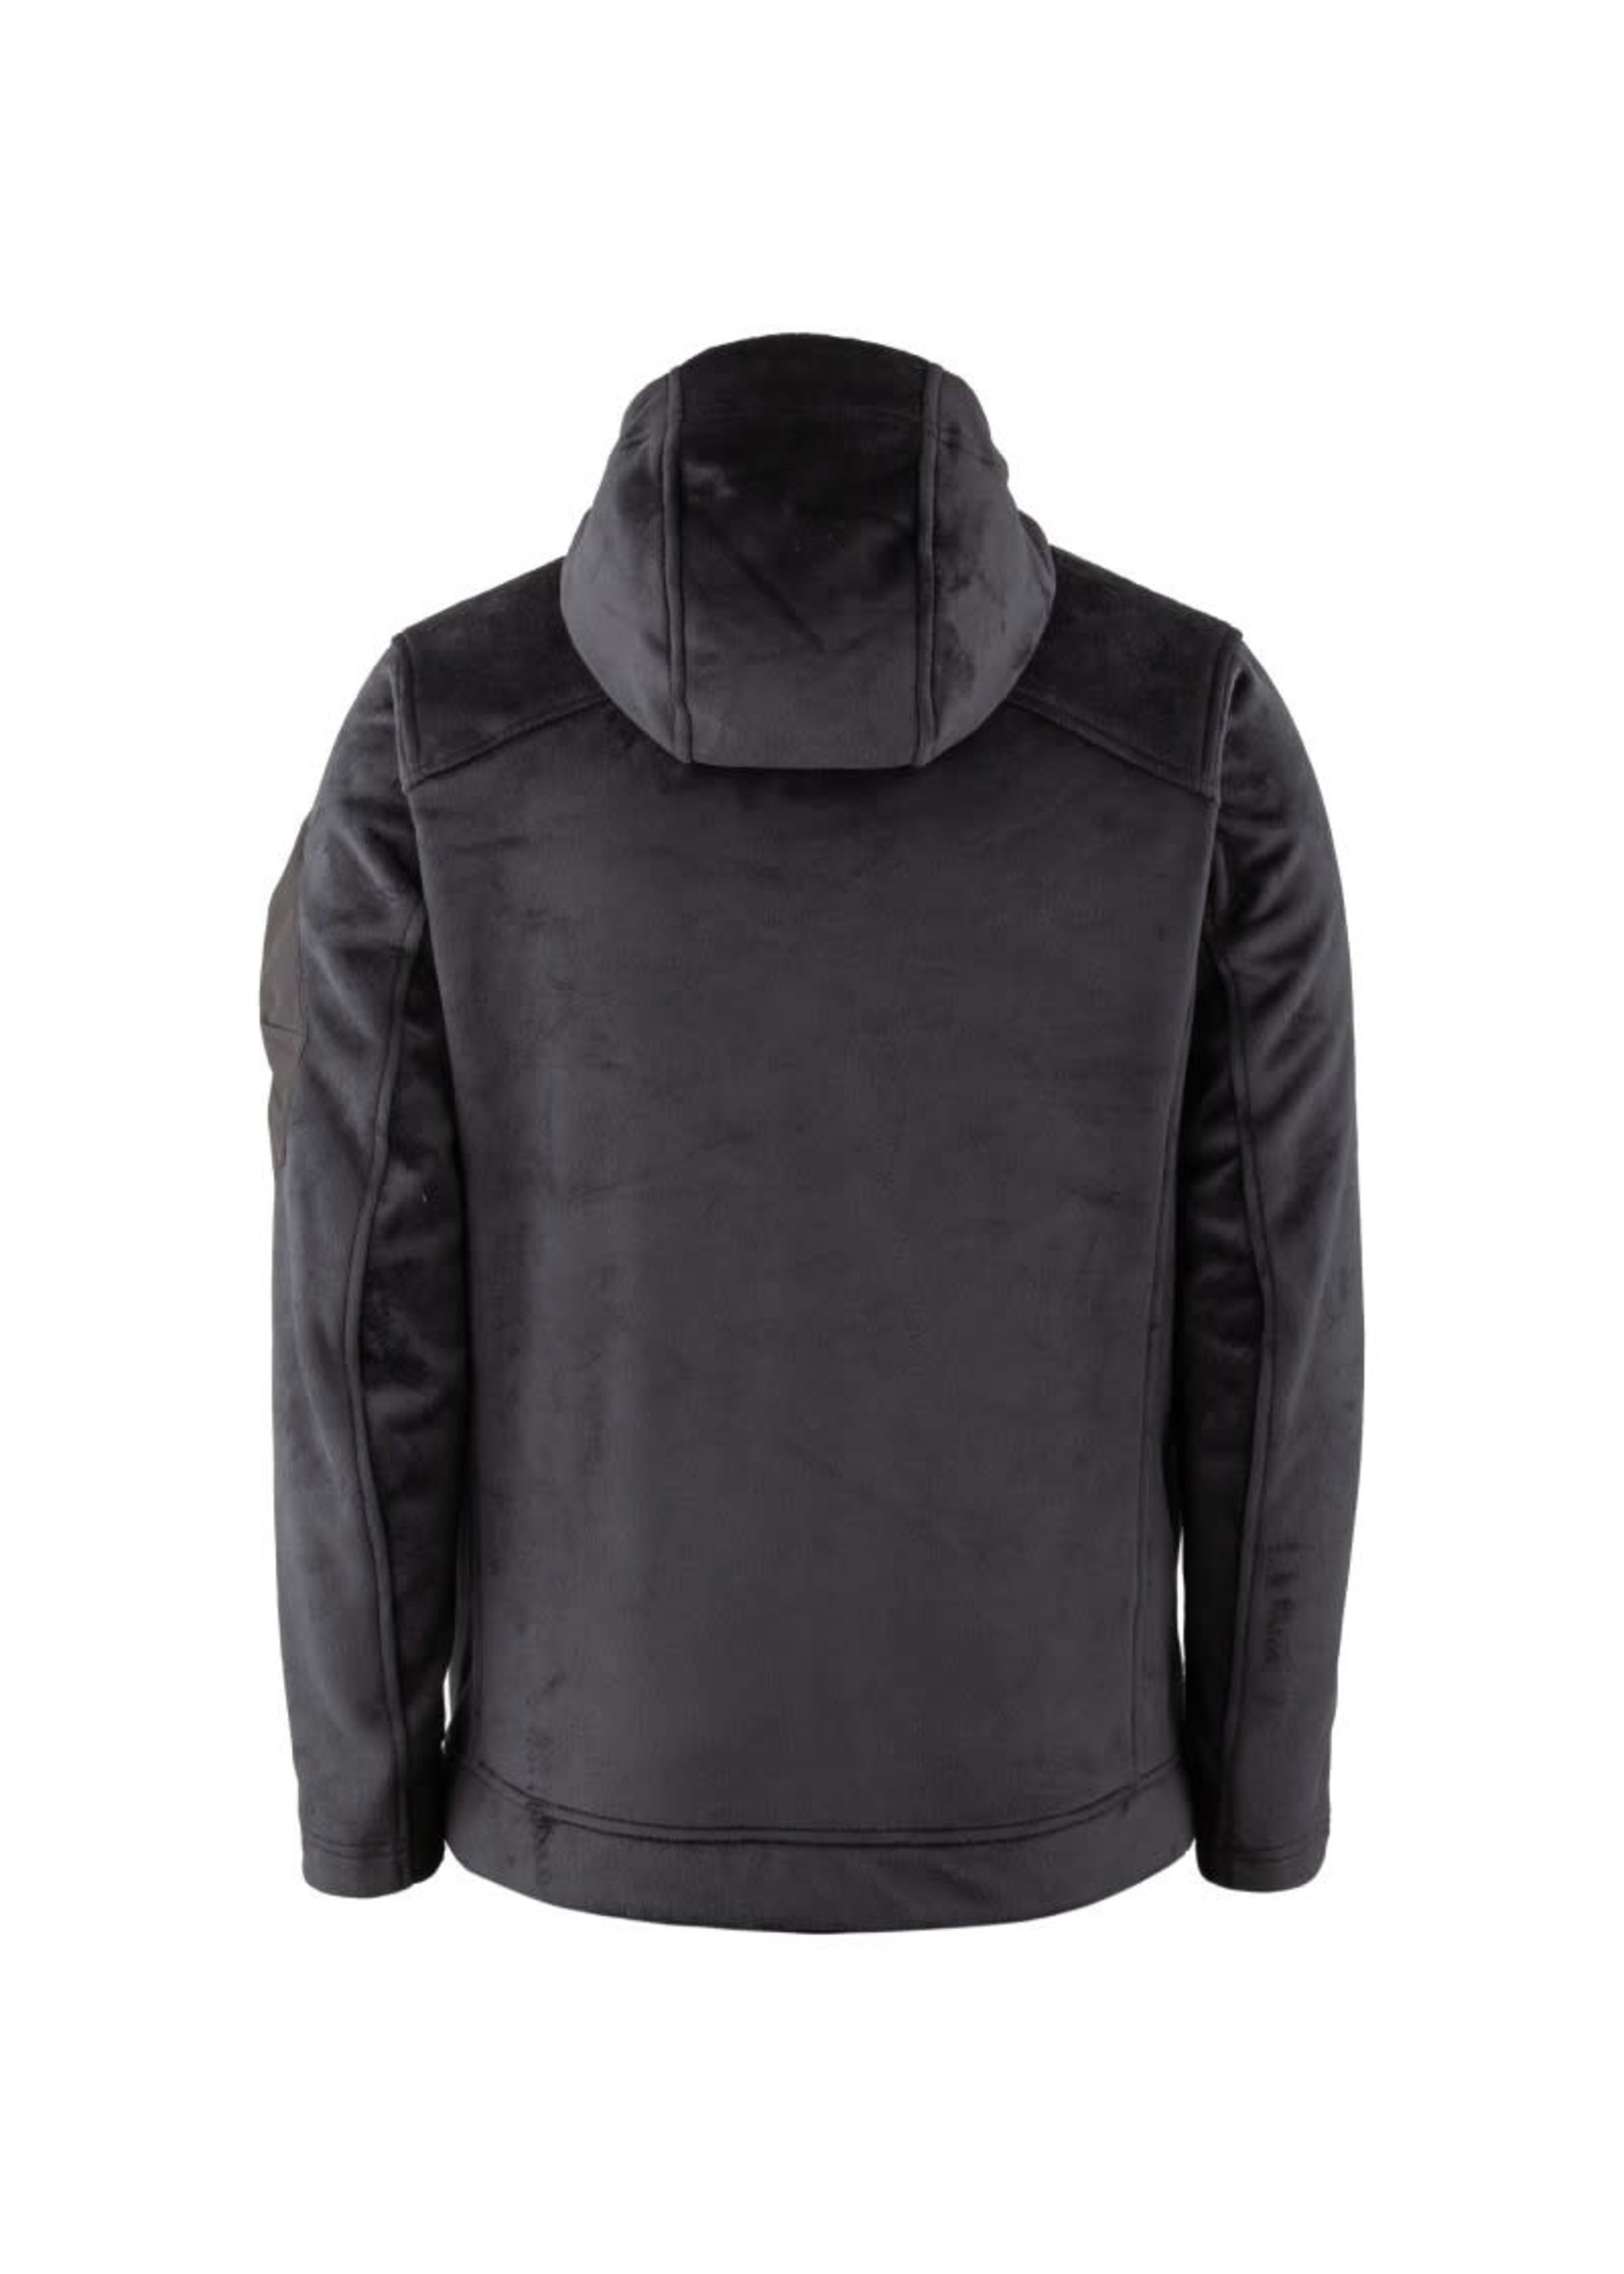 Connec Outdoor radar jacket black